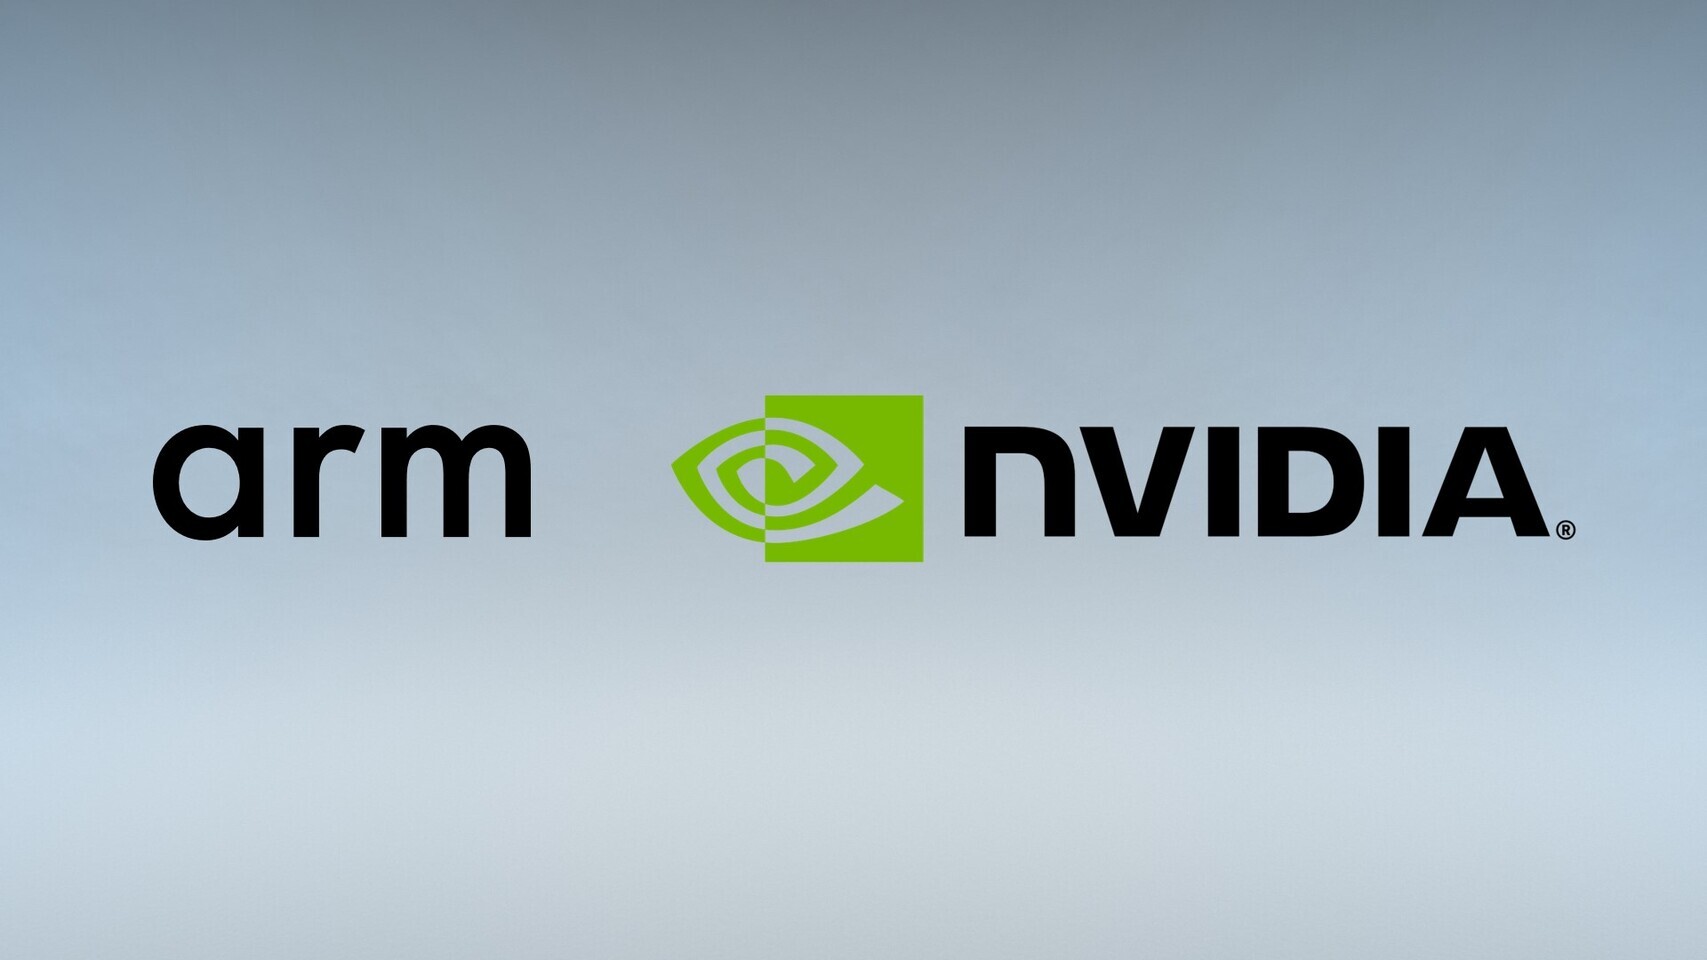 Accordo tra Nvidia e Mediatek per portare la grafica RTX nei Chromebook